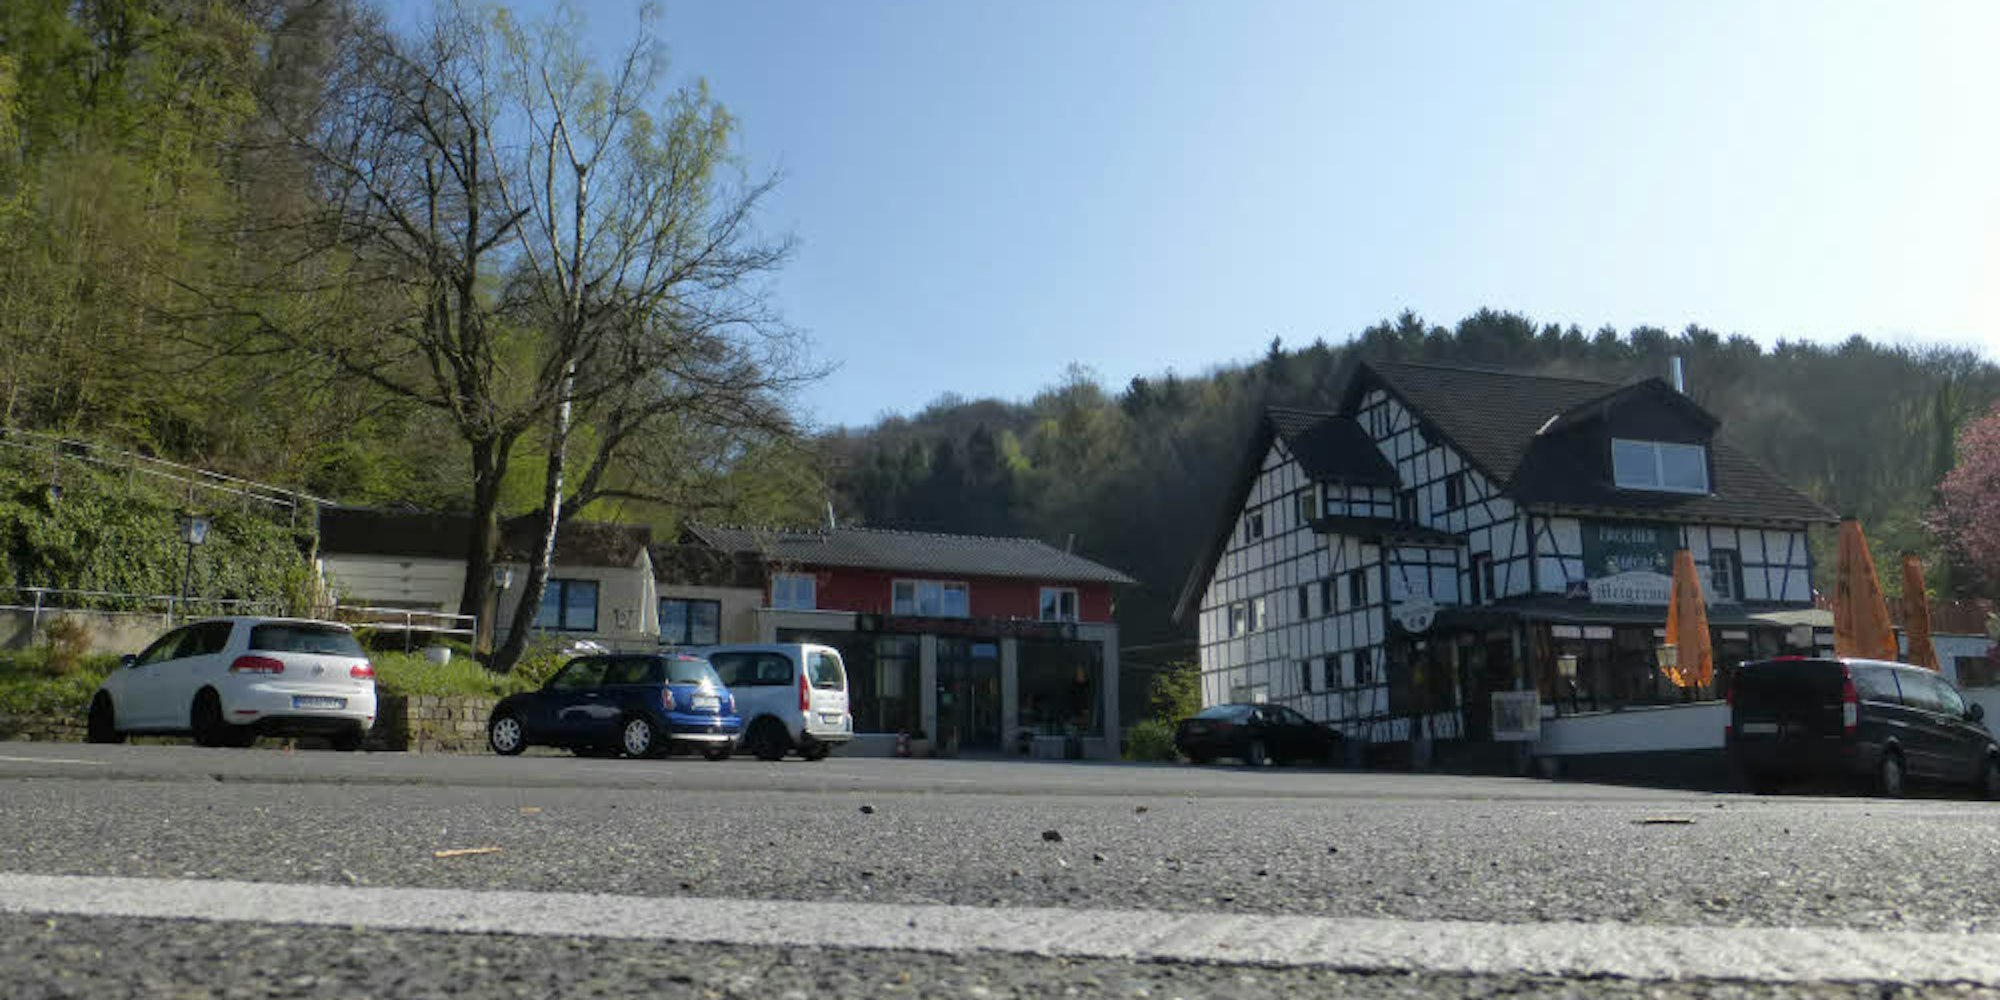 Weithin bekannt als Ausflugslokal ist das Restaurant Meigermühle (rechts) im Sülztal an der Landstraße 288. Kaum bekannt dagegen ist das Seniorenheim Meigermühle, das sich hinter der kleinen Erlebnisbrauerei befindet und erweitert werden soll.